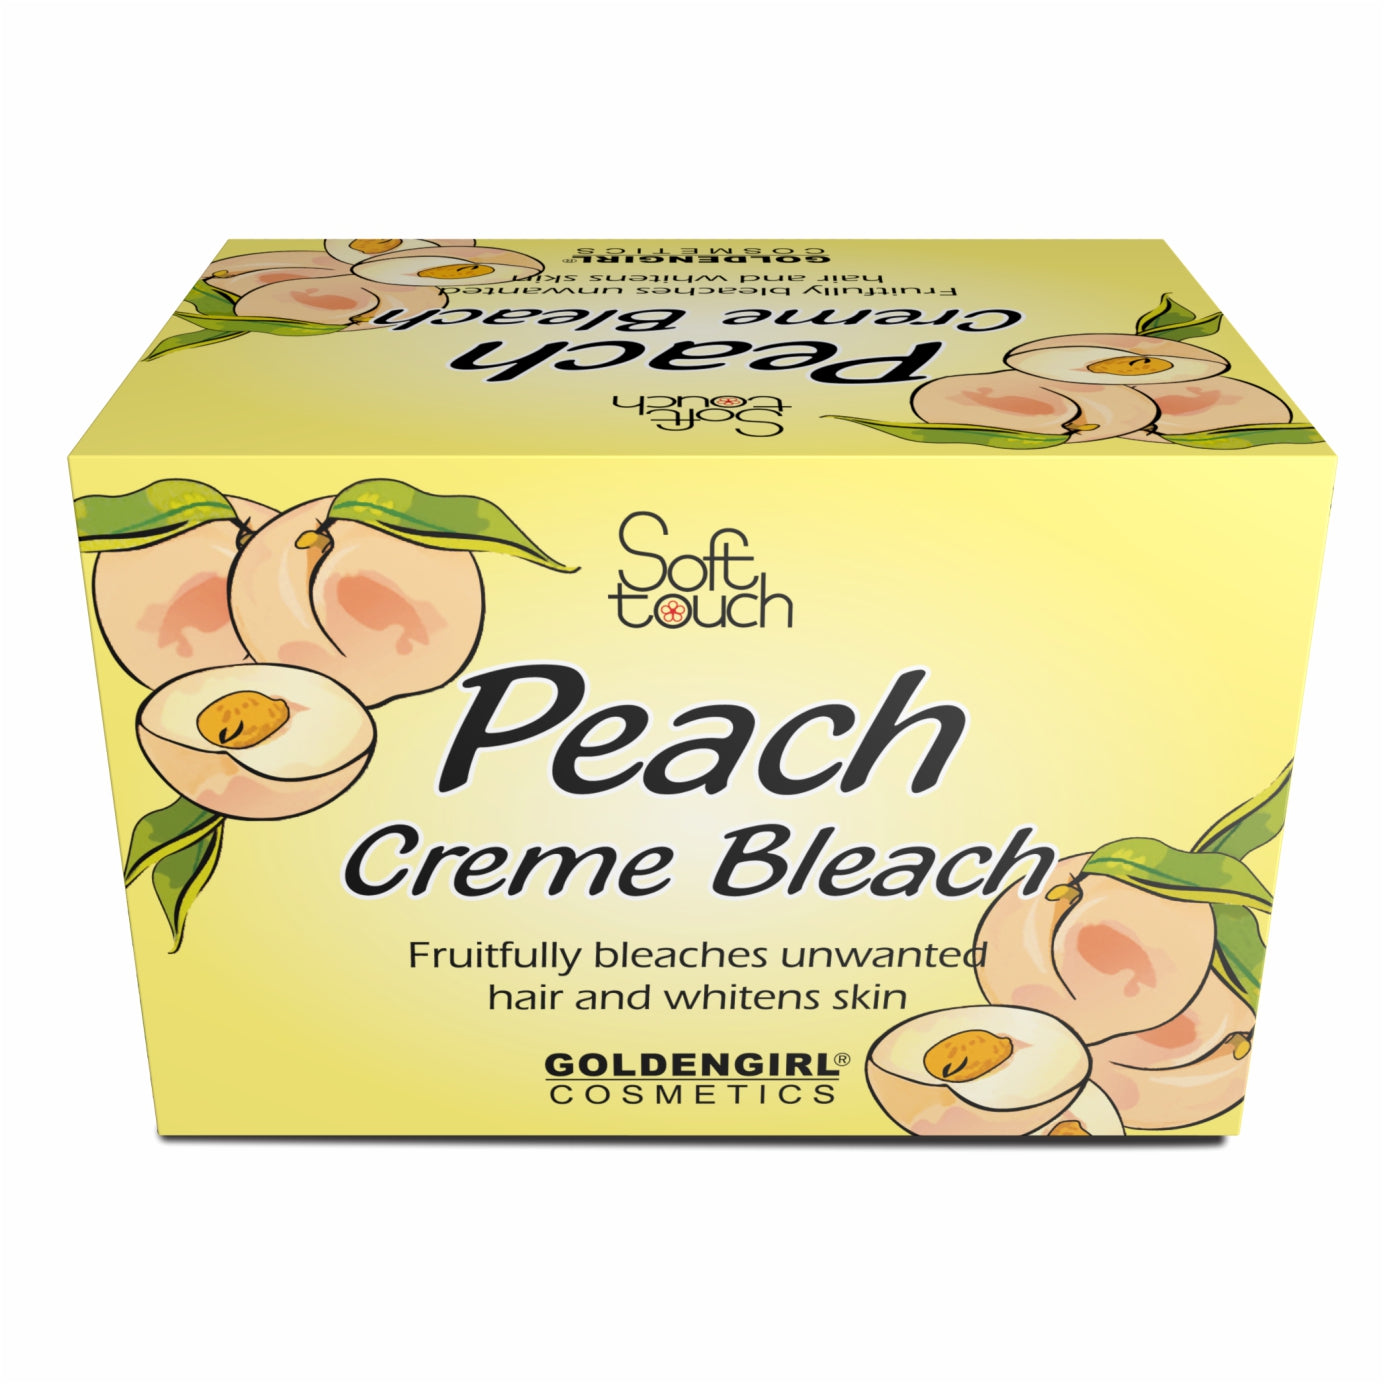 Peach Creme Bleach Jumbo 500gm